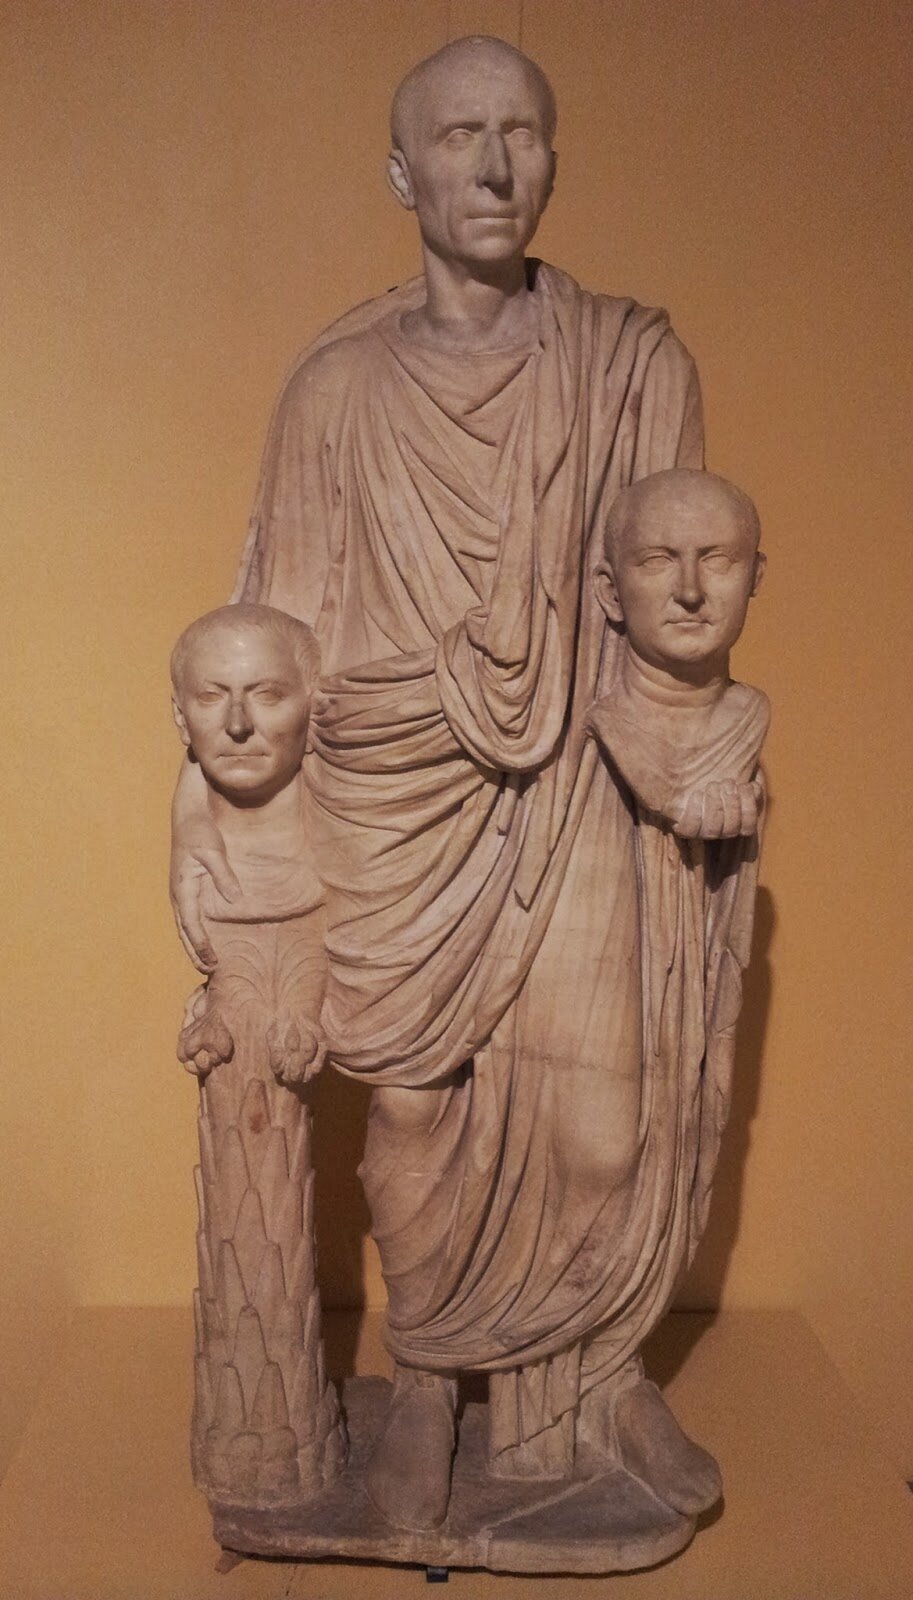 Fotografia nieznanego autora przedstawia rzeźbę nieznanego autora pod tytułem „Rzymianin trzymający popiersia swoich przodków”.  Rzeźba prezentuje łysego mężczyznę w podeszłym wieku. Jego twarz nie ukazuje emocji. Ubrany jest w długą togę sięgającą do kostek. W obu dłoniach trzyma dwa popiersia – kobiety  i mężczyzny. Fotografia rzeźby została wykonana w pomieszczeniu, które ma brązowe ściany. 